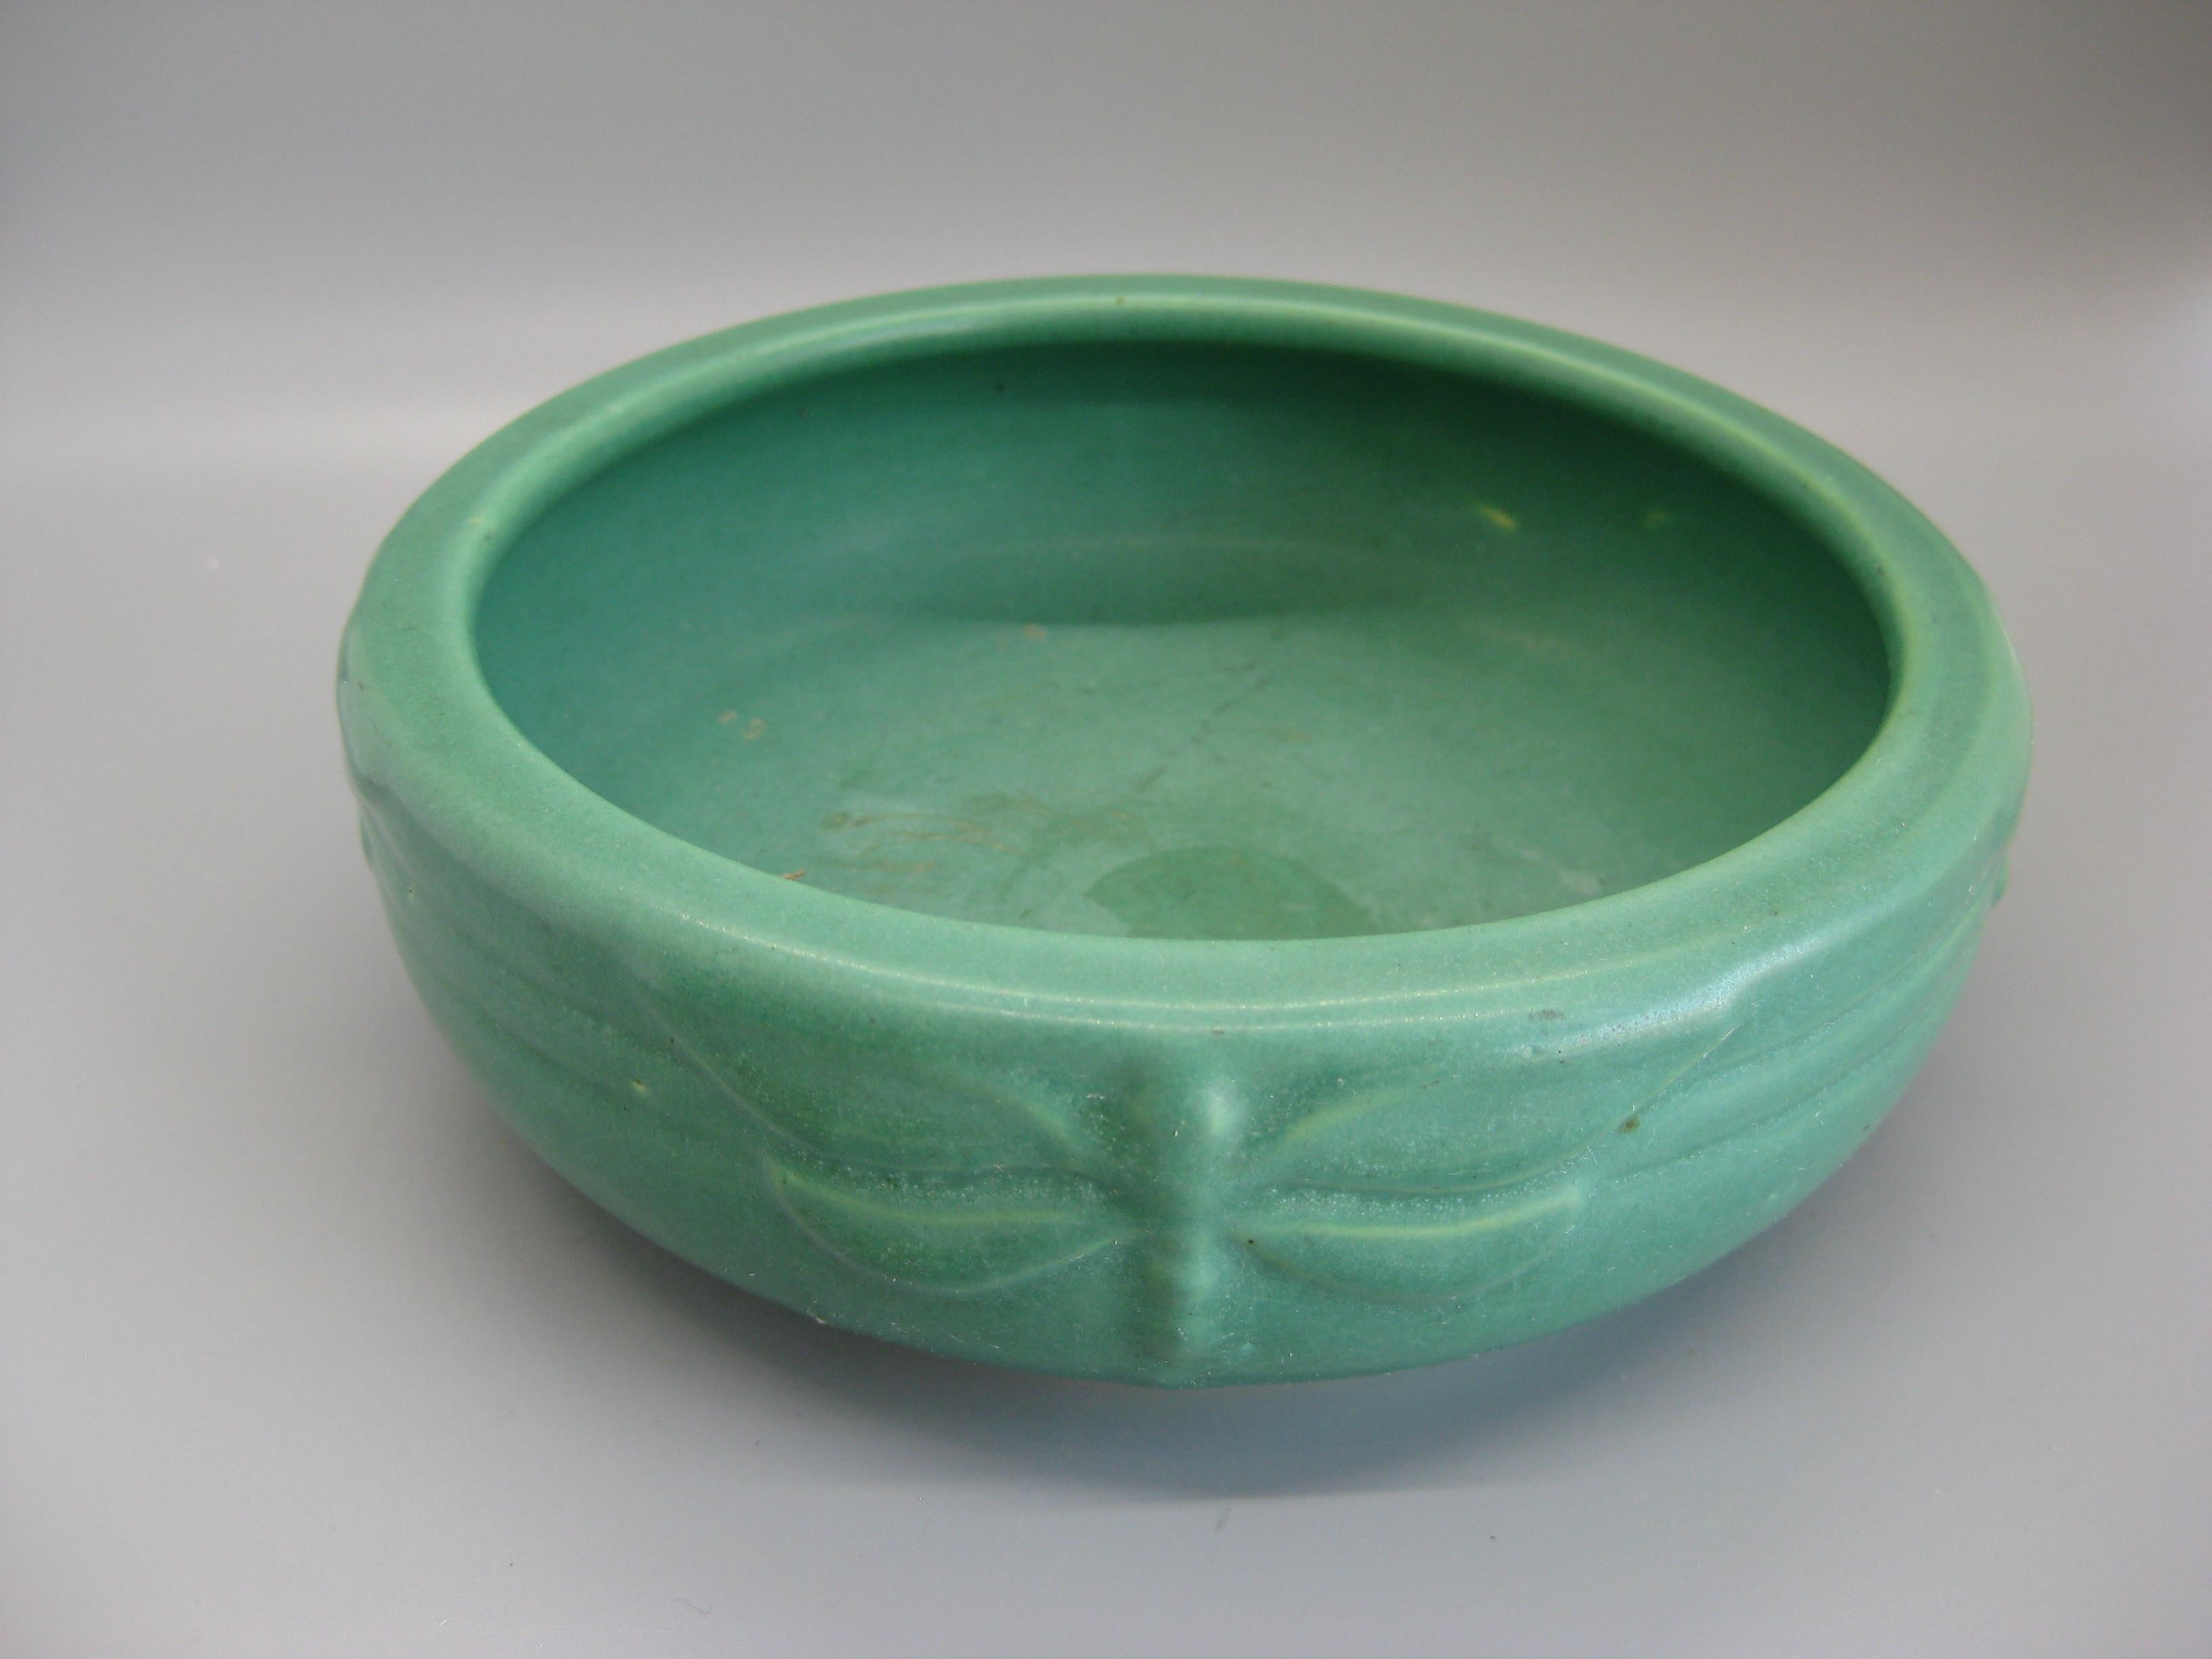 Magnifique bol en poterie d'art Arts & Crafts vert mat fabriqué par Peters & Reed à Zanesville, Ohio. Il date du début des années 1900. Merveilleuse couleur et forme. Les côtés sont décorés de libellules. S'intégrerait parfaitement dans tout décor